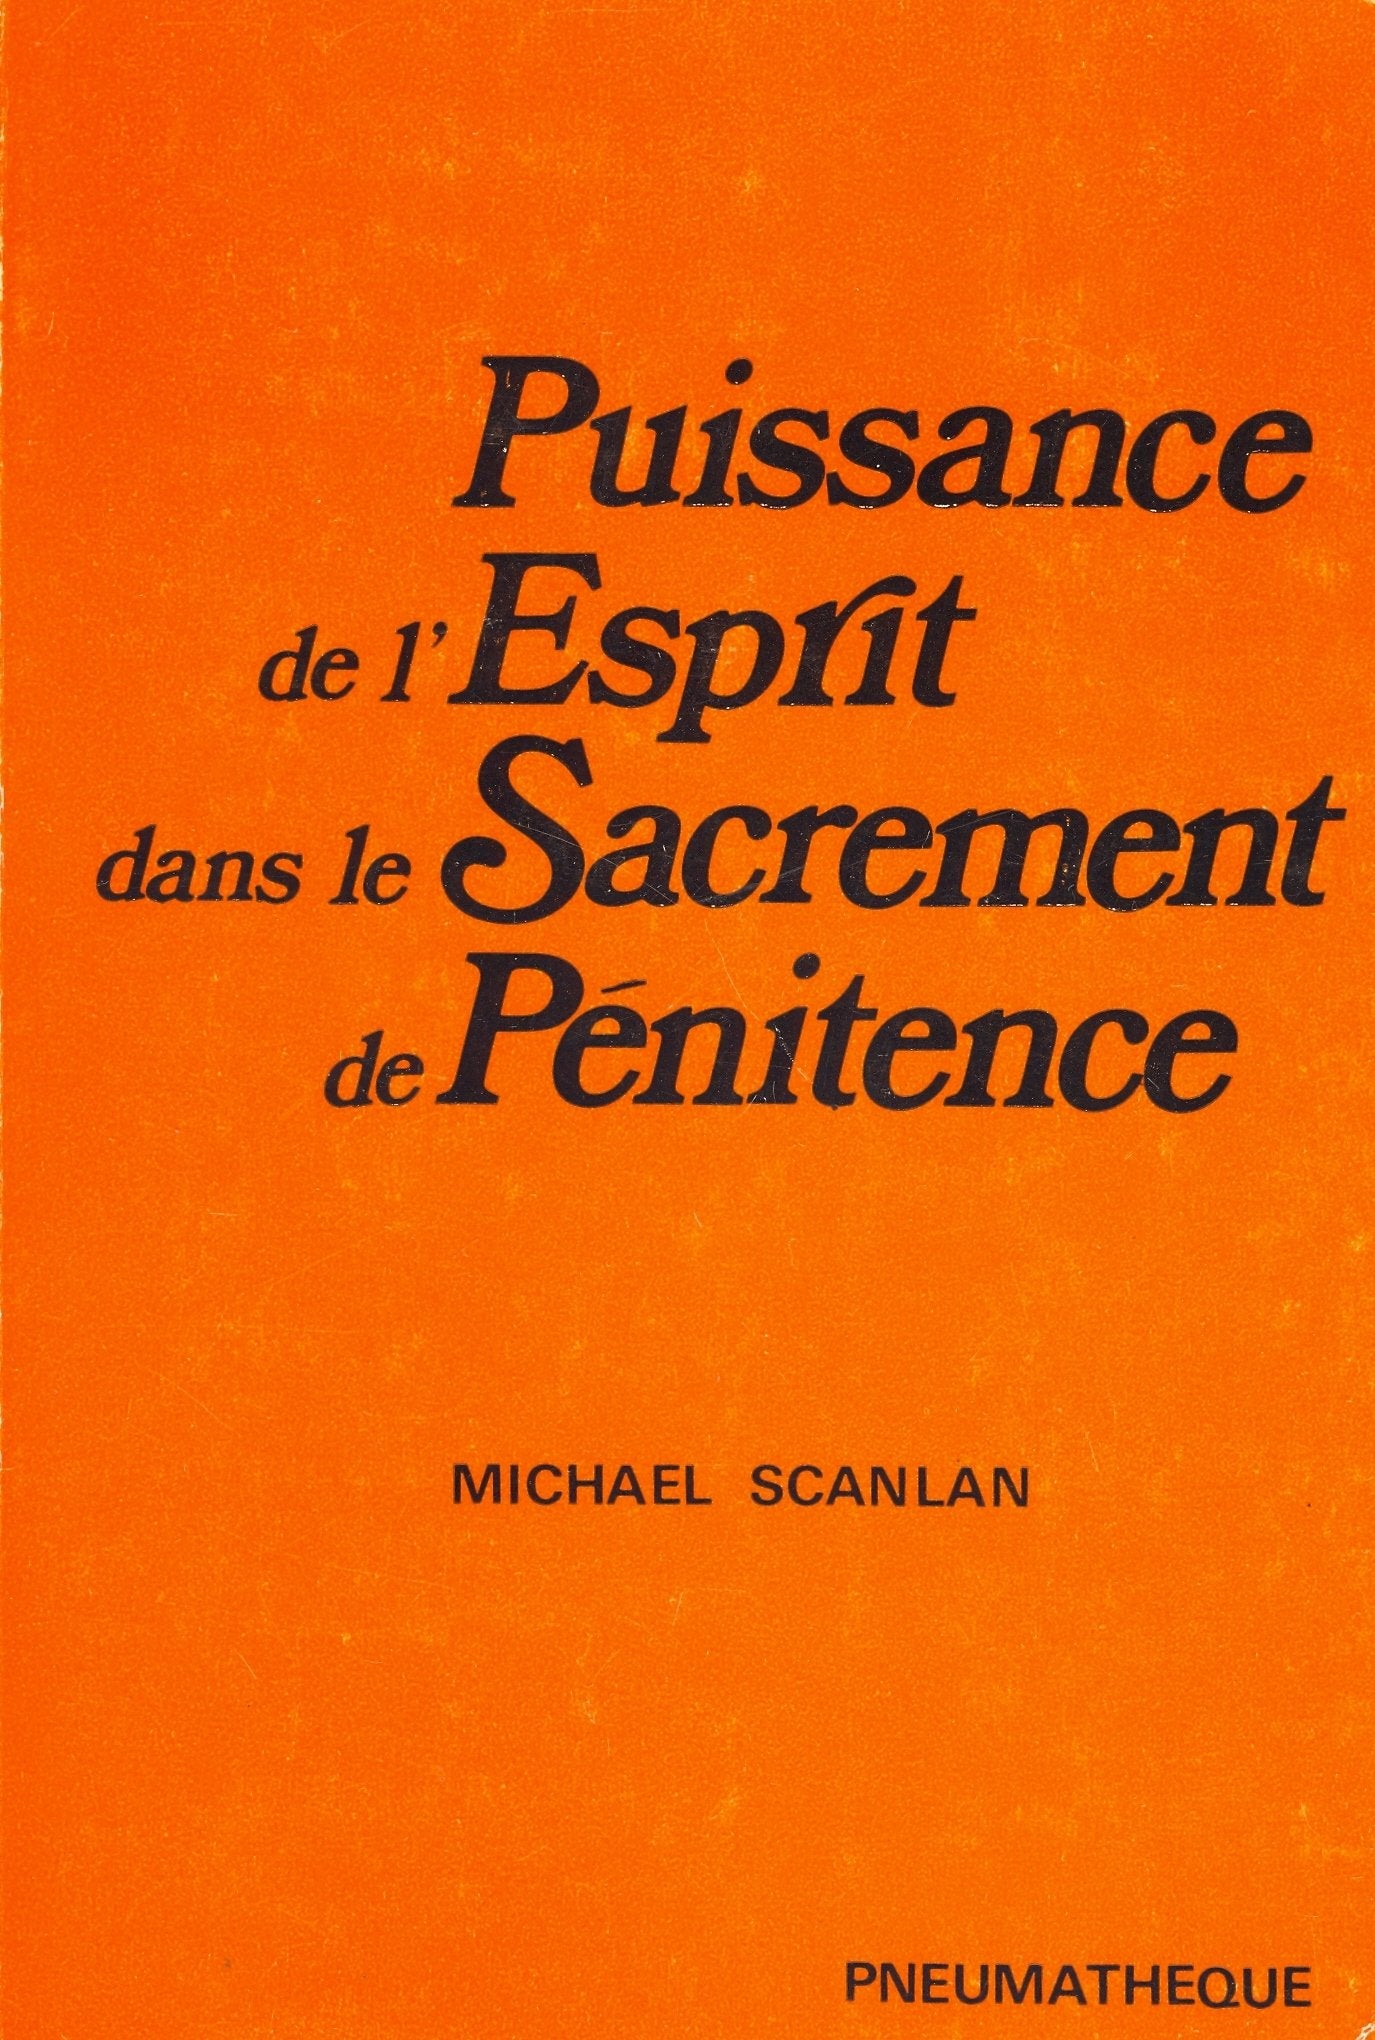 Livre ISBN 285847009X Puissance de l'esprit dans le sacrement de pénitence (Michael Scanlan)